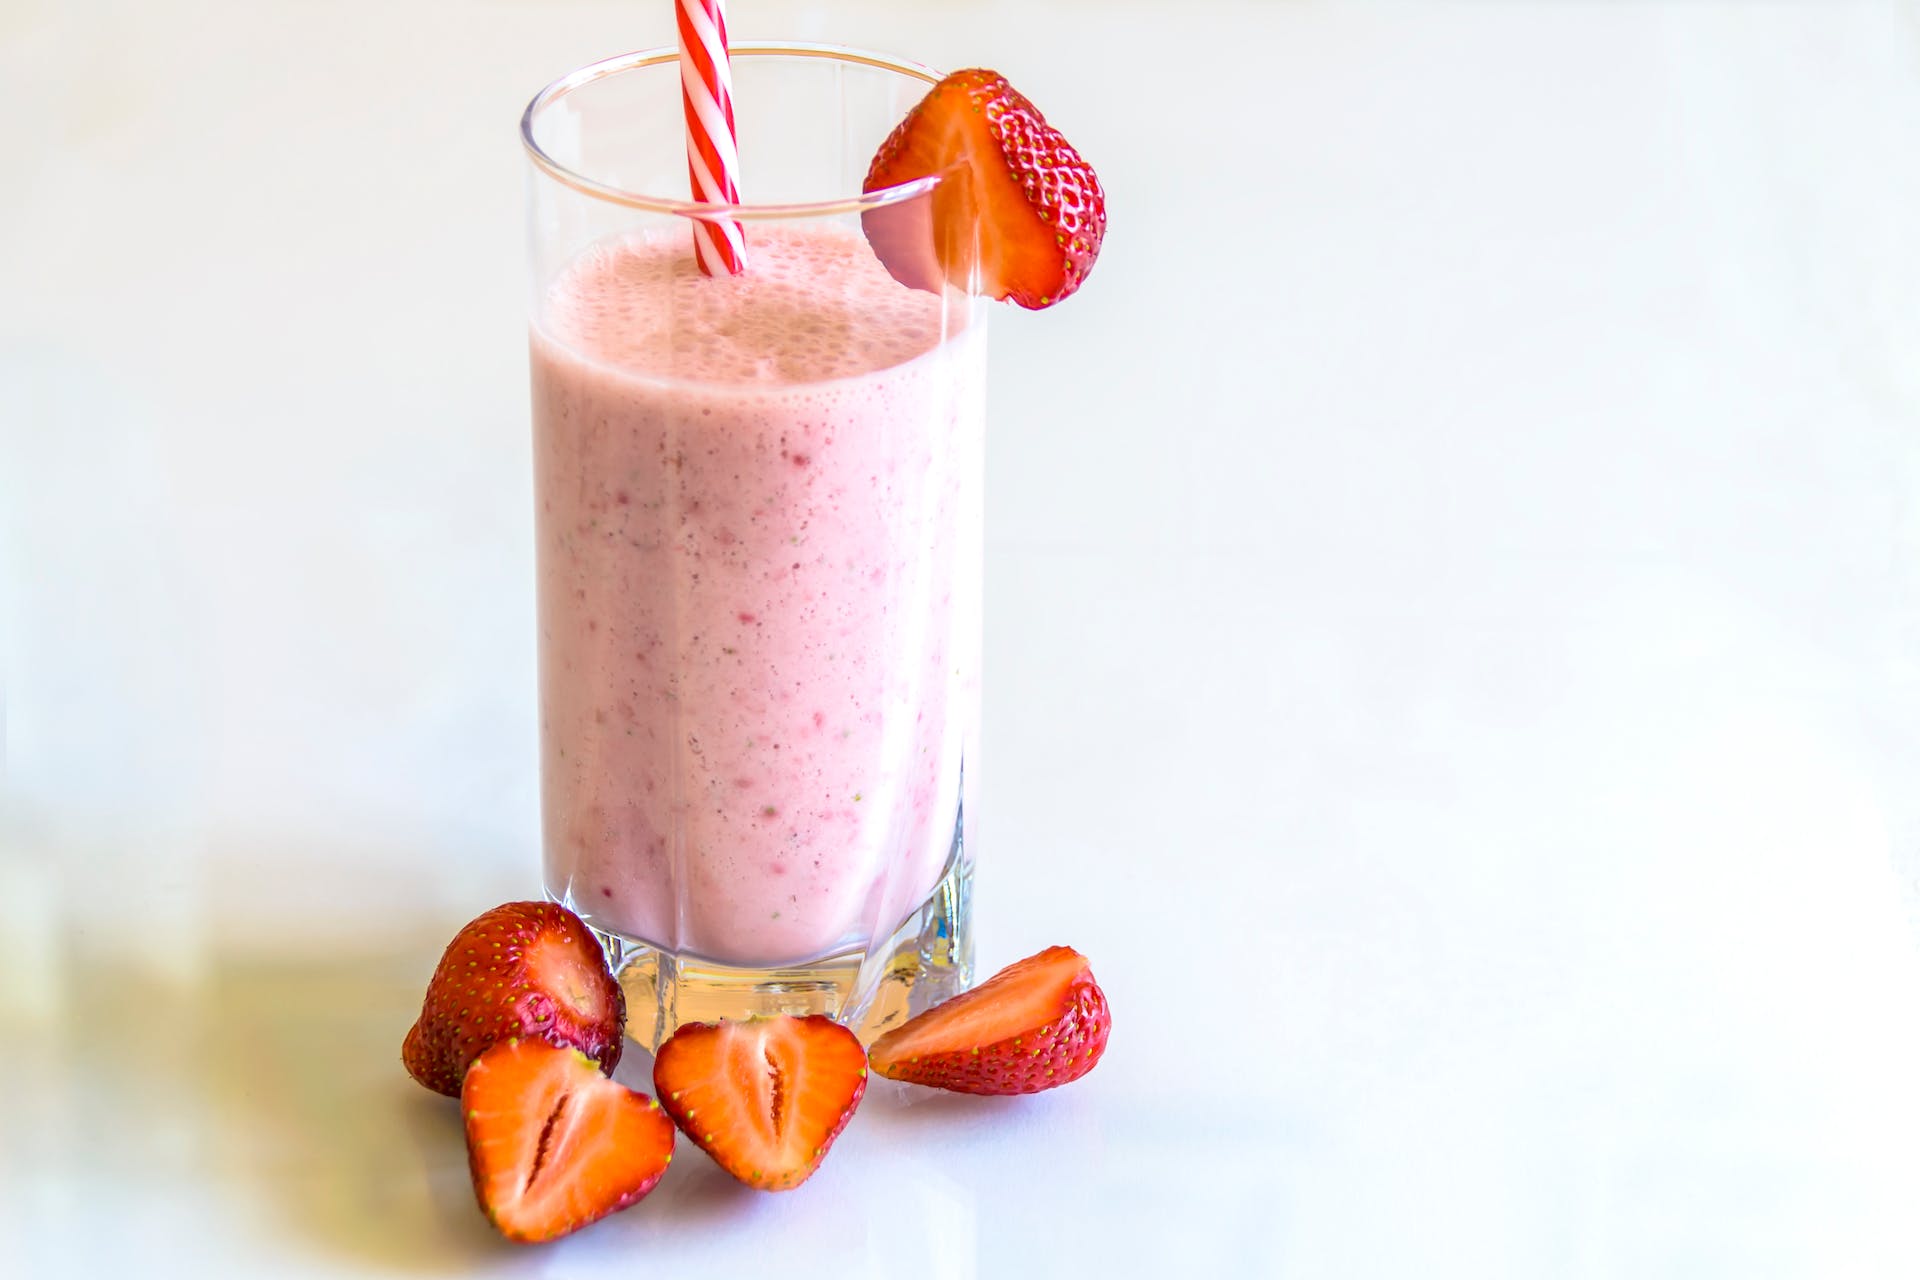 Un milkshake à la fraise avec des morceaux de fraises | Source : Pexels